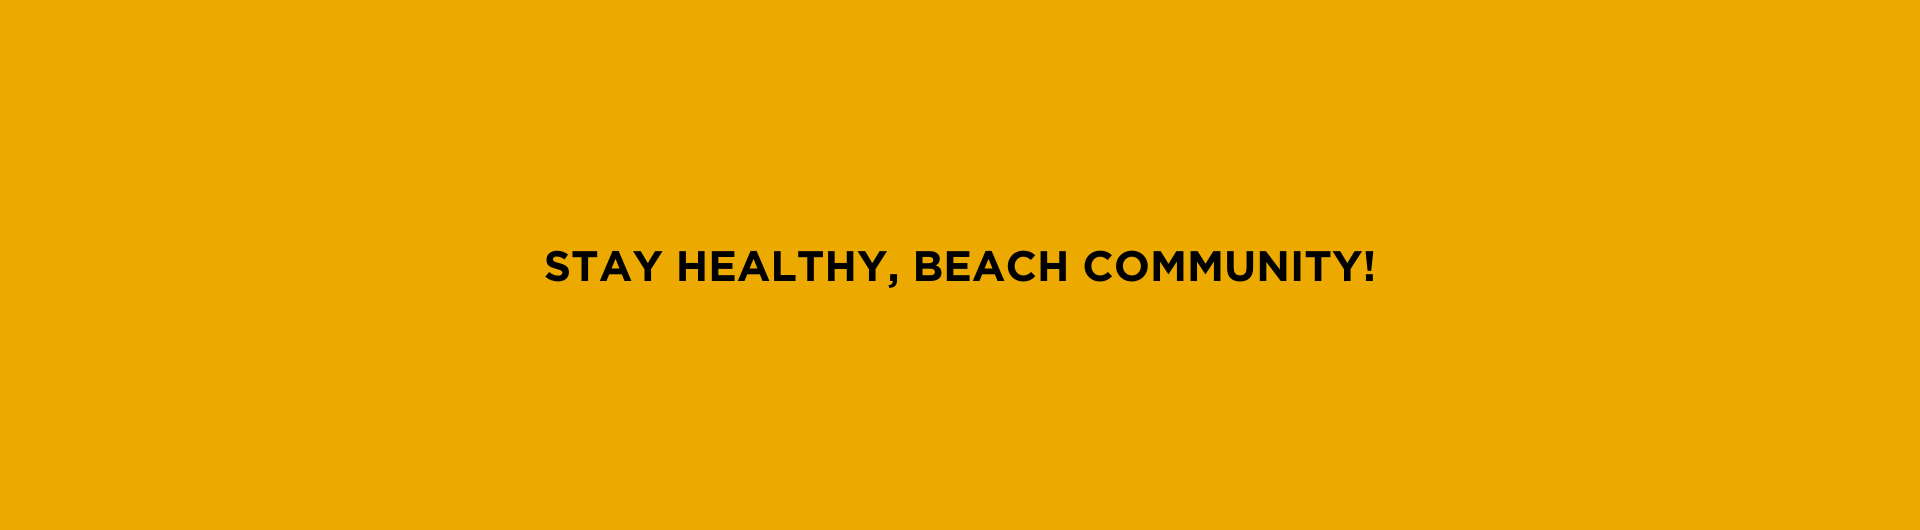 Stay Healthy, Beach Community